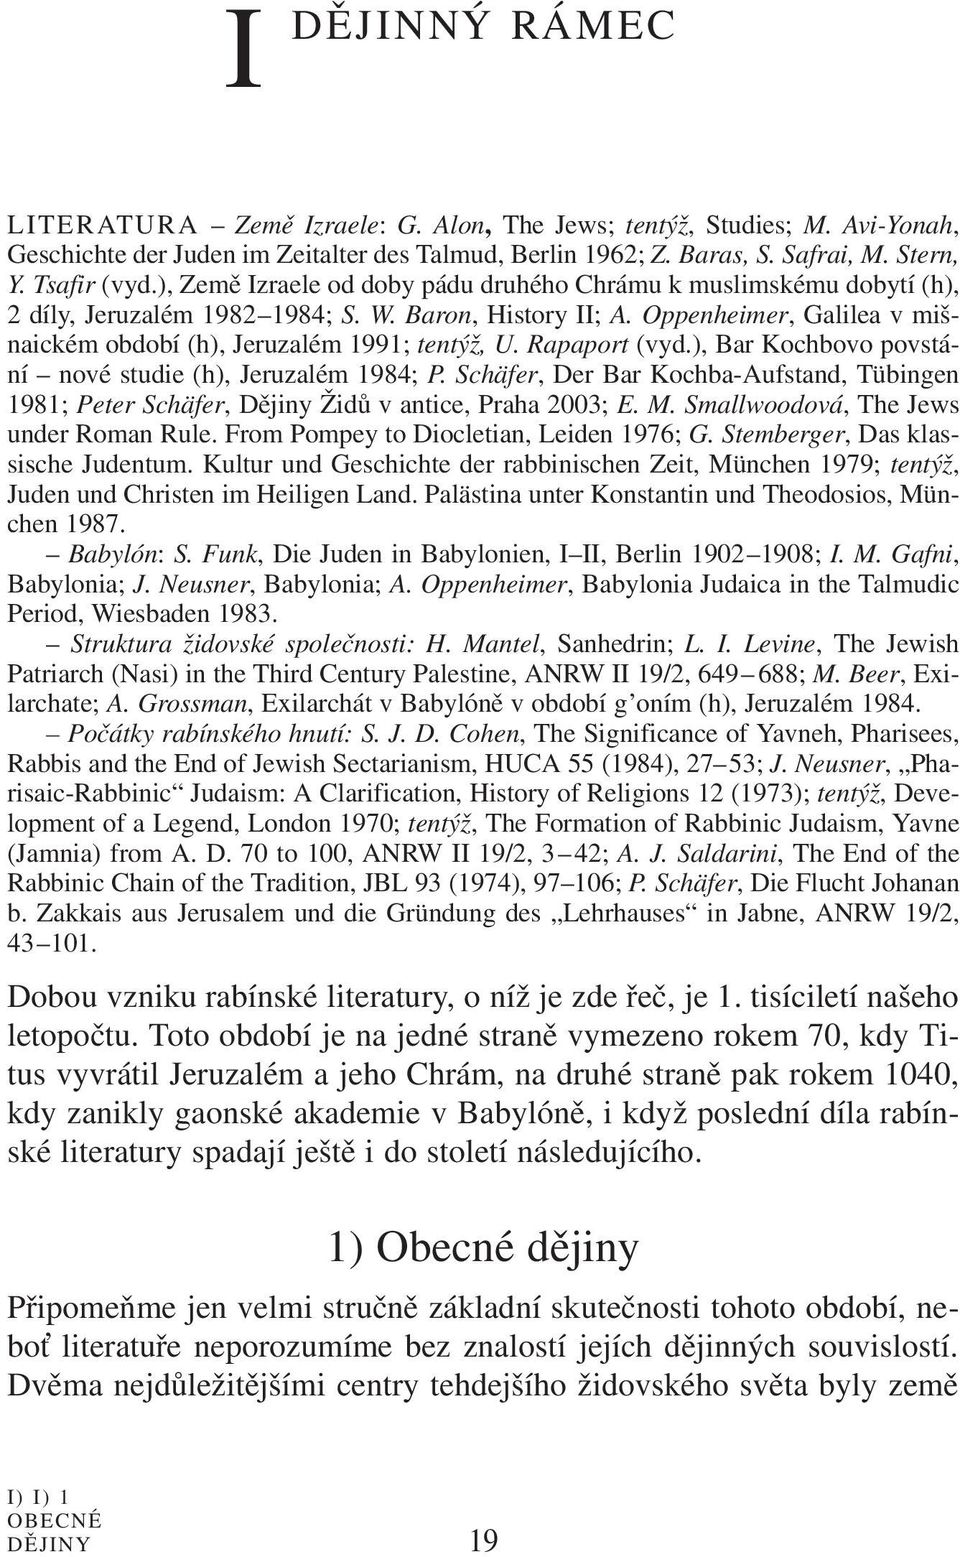 Rapaport (vyd.), Bar Kochbovo povstání nové studie (h), Jeruzalém 1984; P. Schäfer, Der Bar Kochba-Aufstand, Tübingen 1981; Peter Schäfer, Dějiny Židů v antice, Praha 2003; E. M.